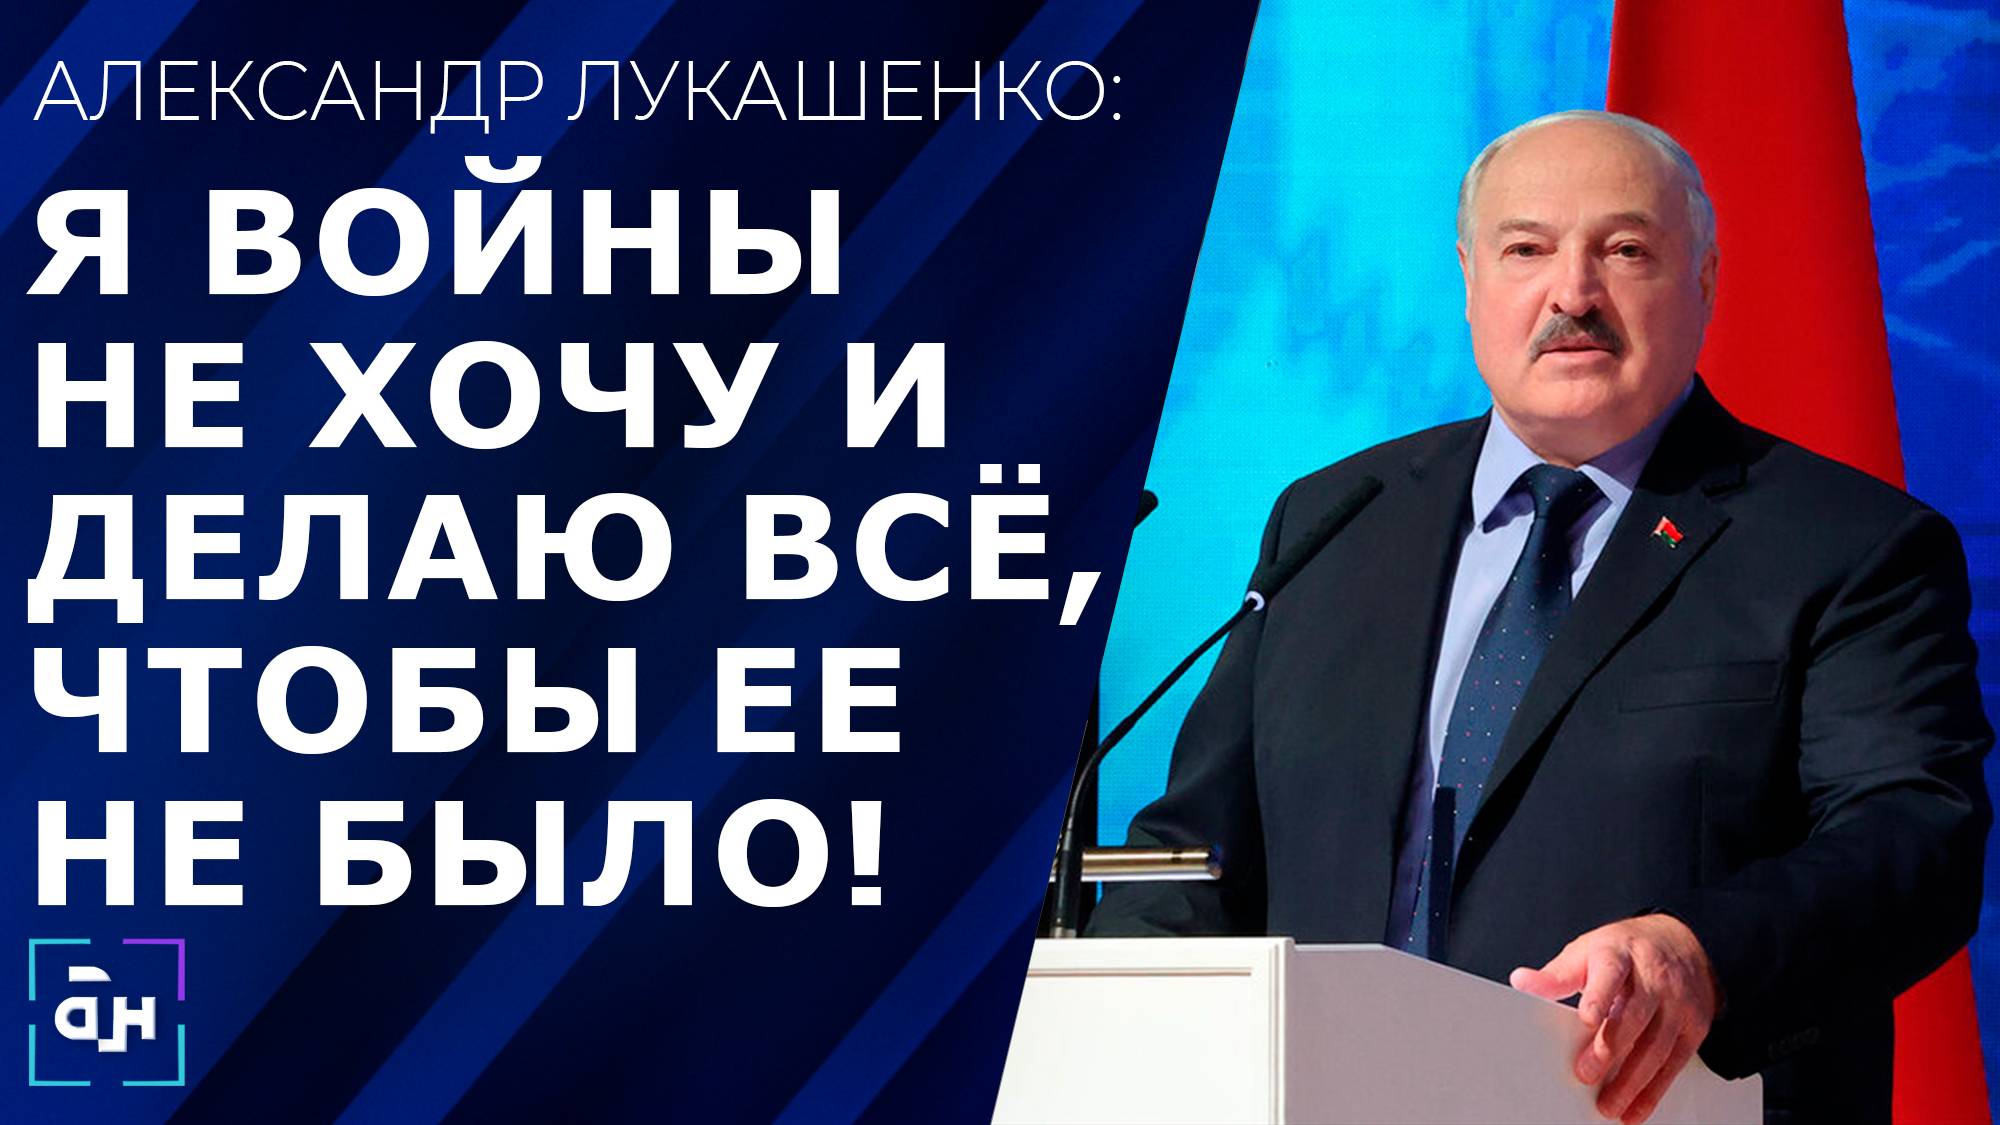 Лукашенко: если нет дерзости, это уже не журналистика, но зря обижать людей нельзя. Панорама